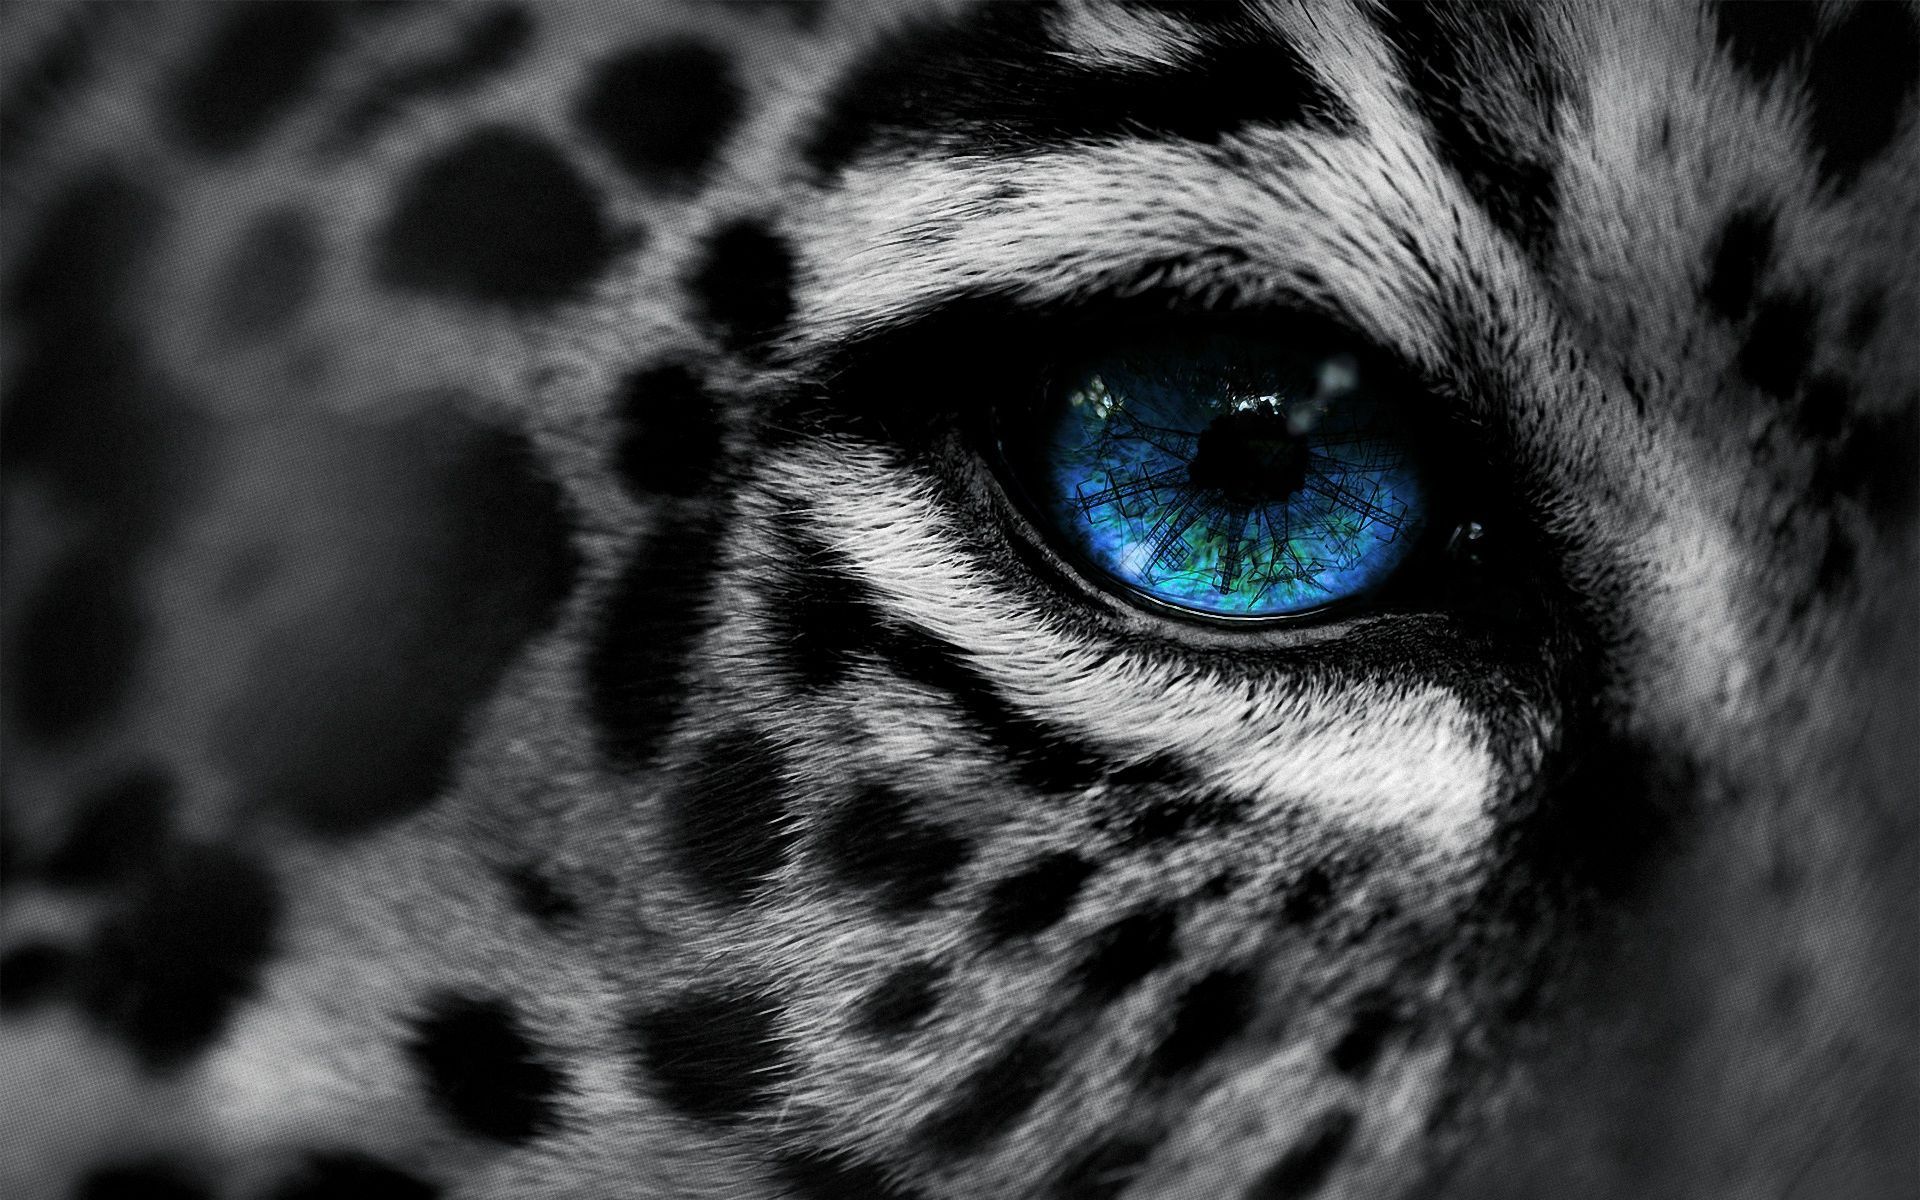 Blue Eyes Leopard Wallpaper